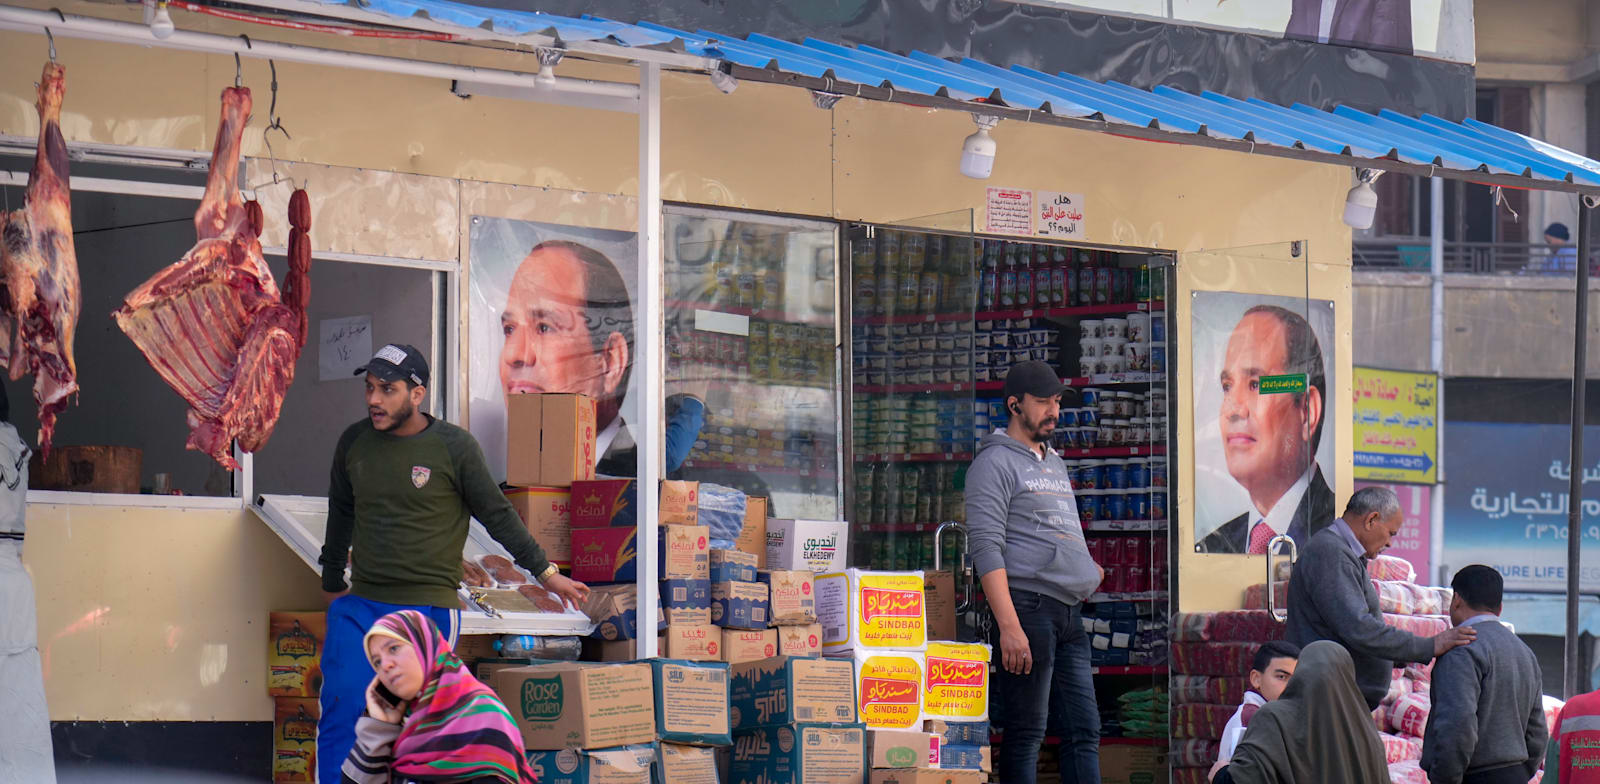 לקוחות בקהיר קונים מצרכים בחנות מעוטרת בפוסטרים של נשיא מצרים א־סיסי / צילום: Associated Press